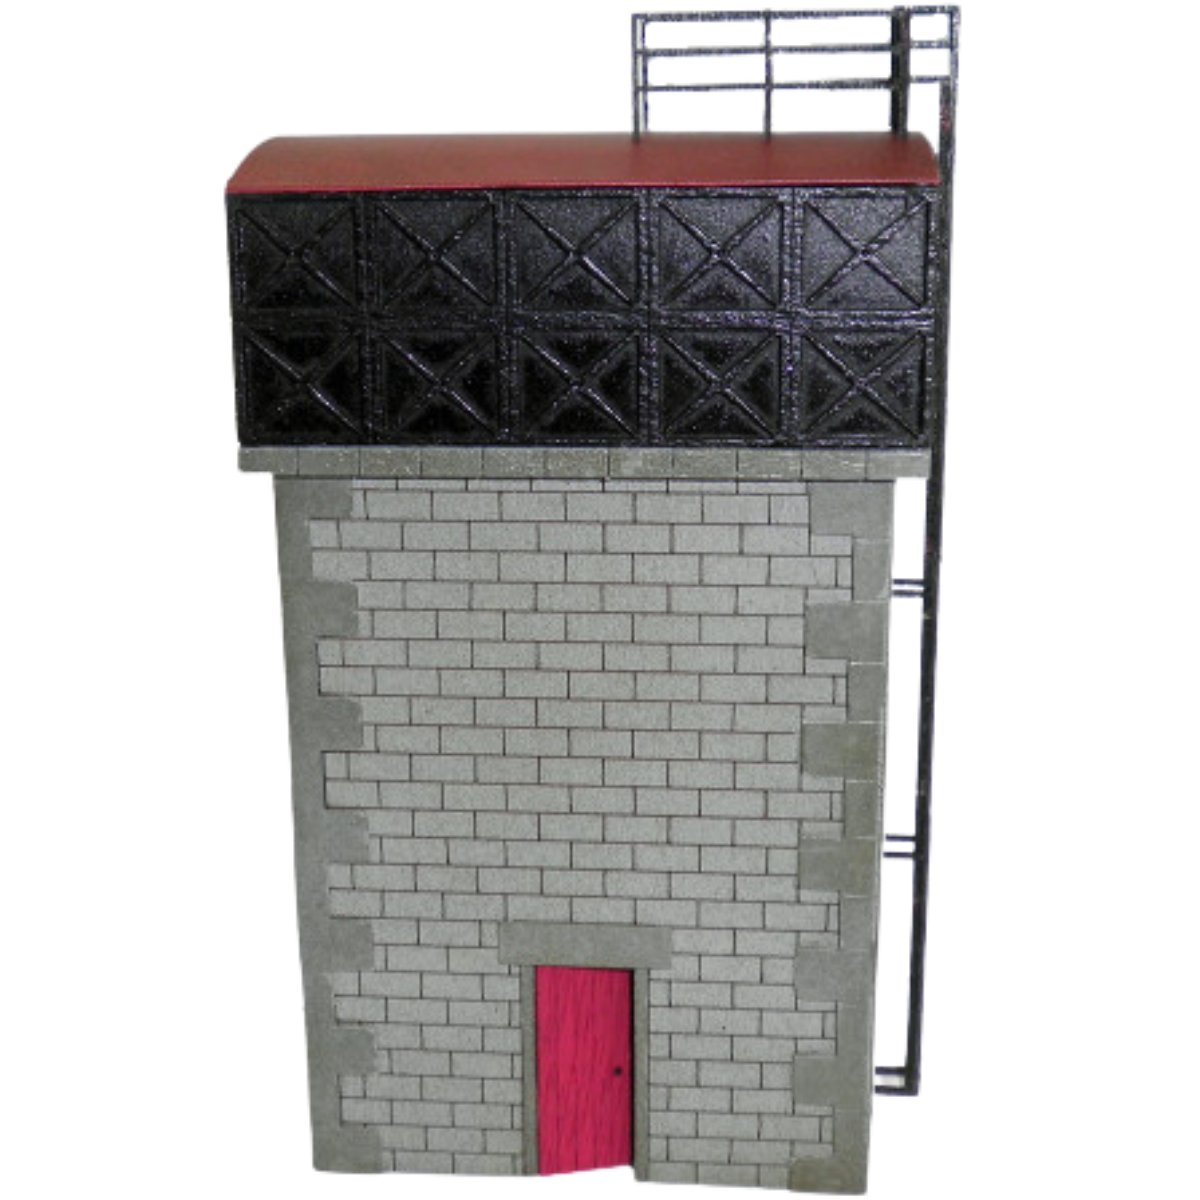 Ancorton Models OOWT1 Water Tower Kit (OO Gauge) - Phillips Hobbies